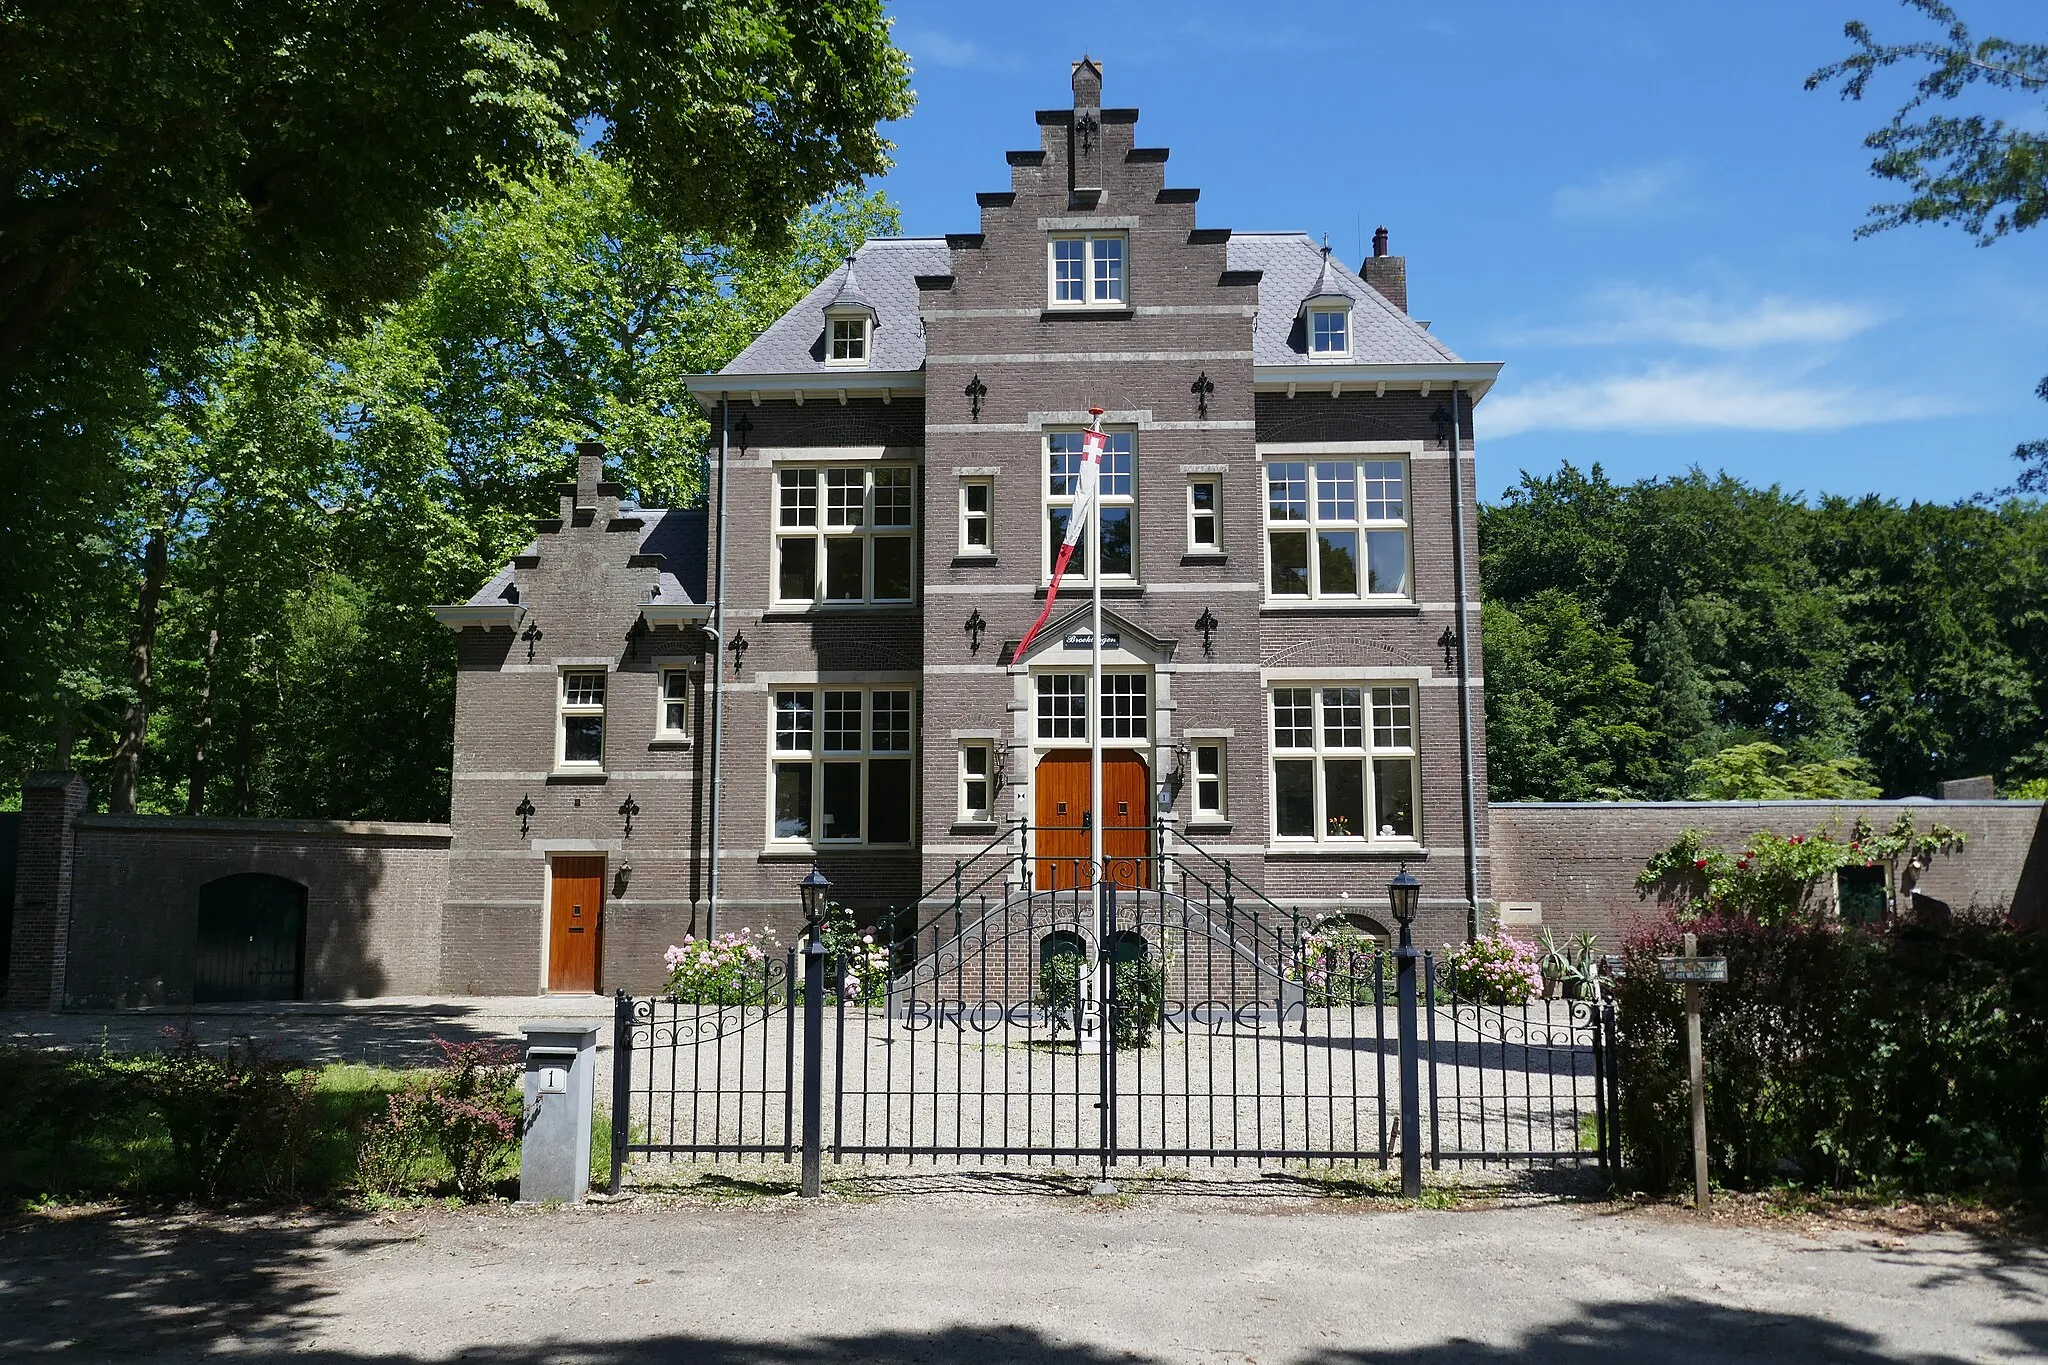 Image of Utrecht